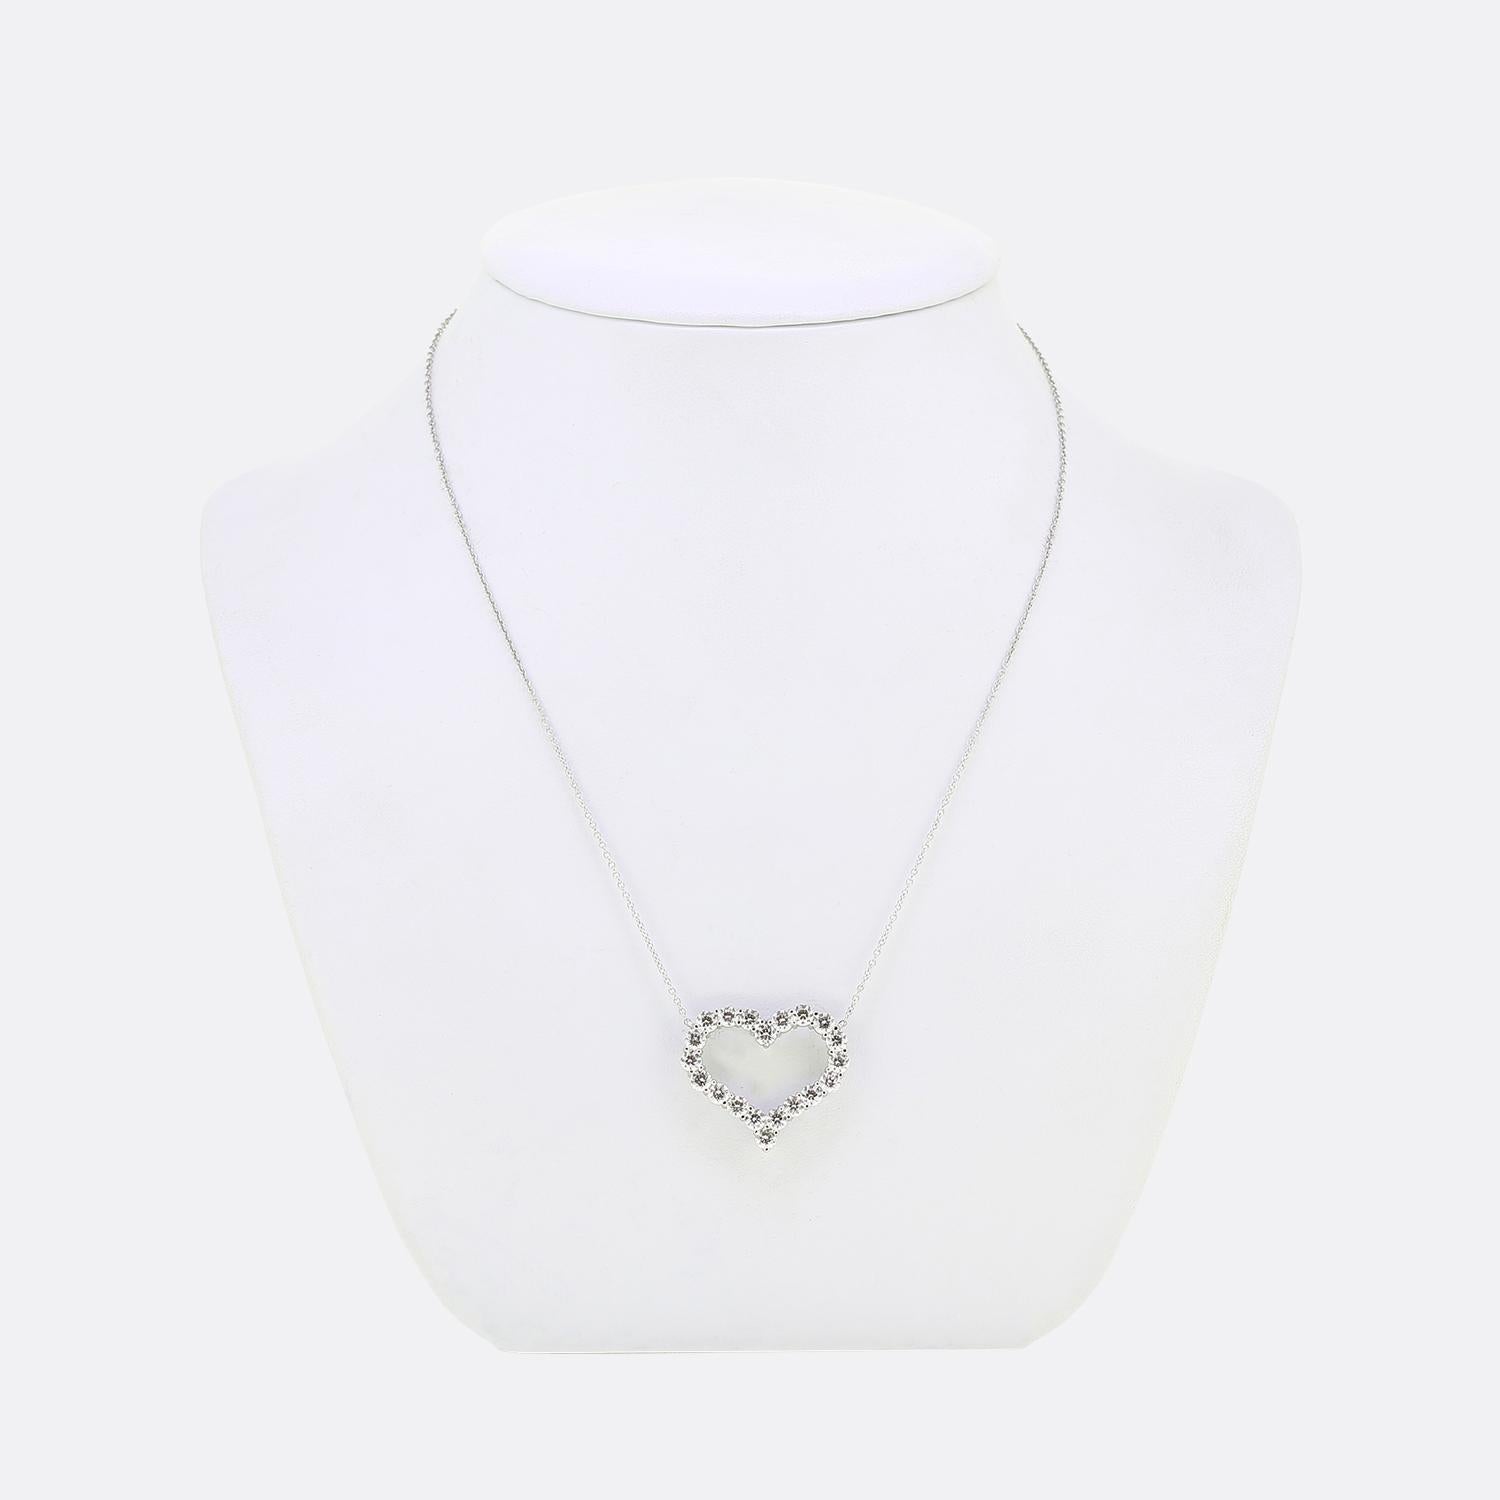 Nous avons ici un magnifique collier du célèbre créateur de bijoux de luxe Tiffany and Co. Le pendentif présenté est formé de 20 diamants ronds de taille brillante qui suivent collectivement la forme d'un cœur d'amour et qui sont suspendus à une